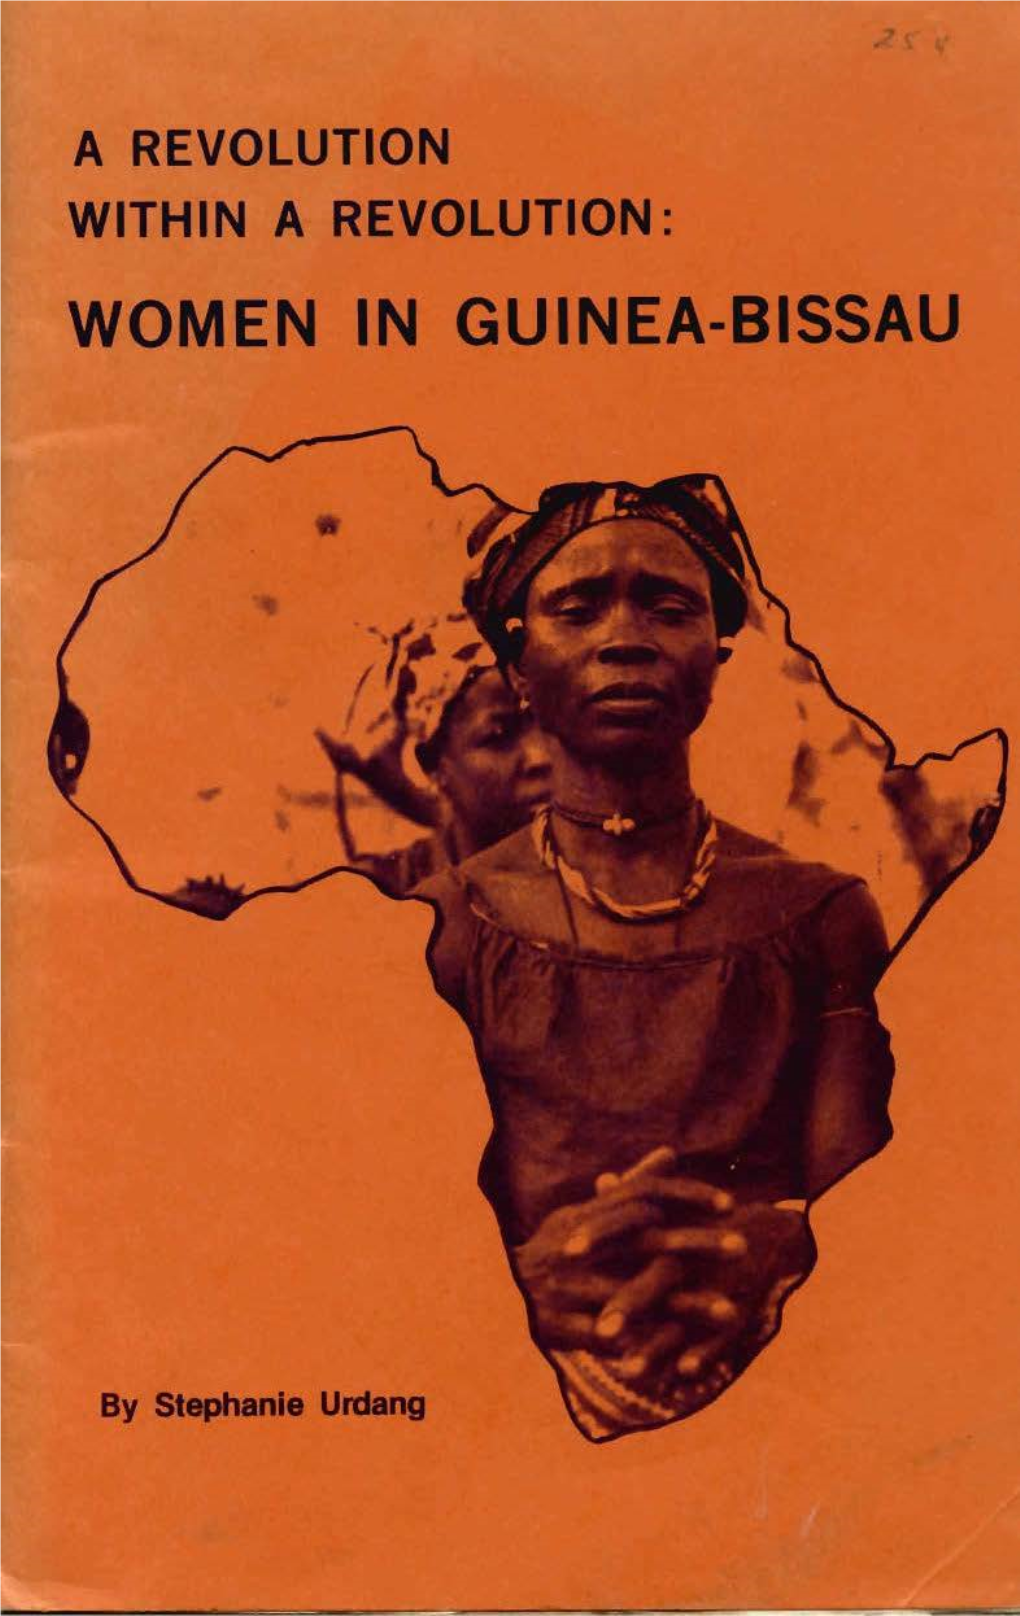 Women in Guinea-Bissau